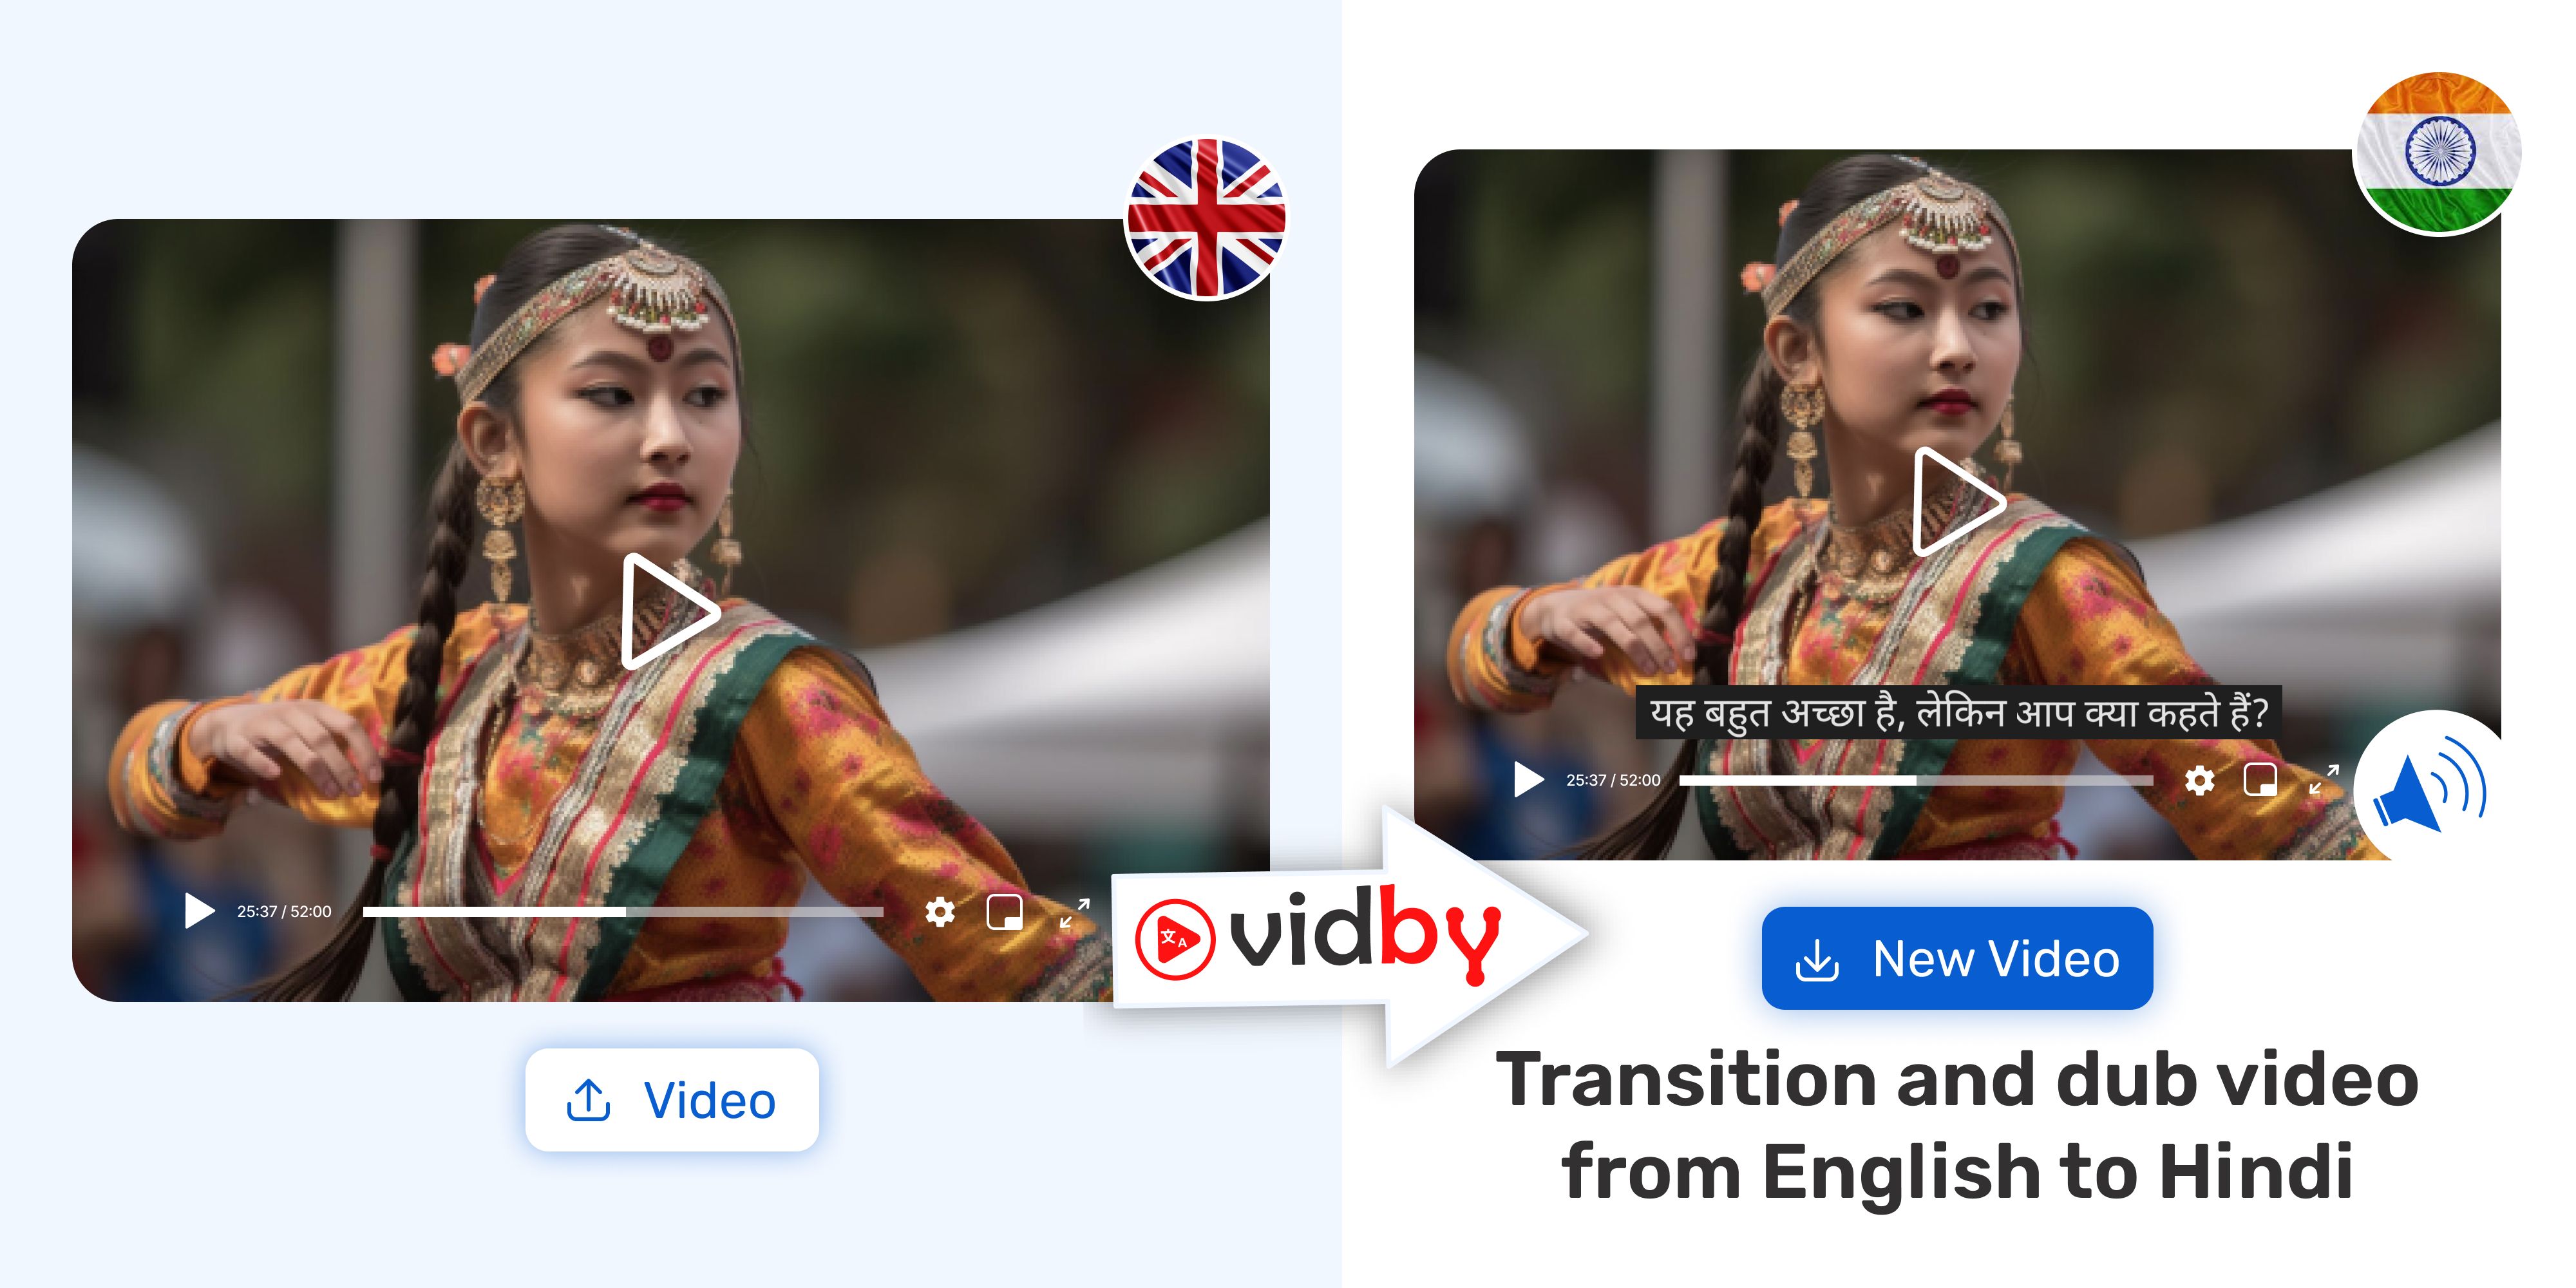 Hindi 3gp Mp3 Saxi Video Downlod Ke Liye - Translate Video from English to Hindi | vidby